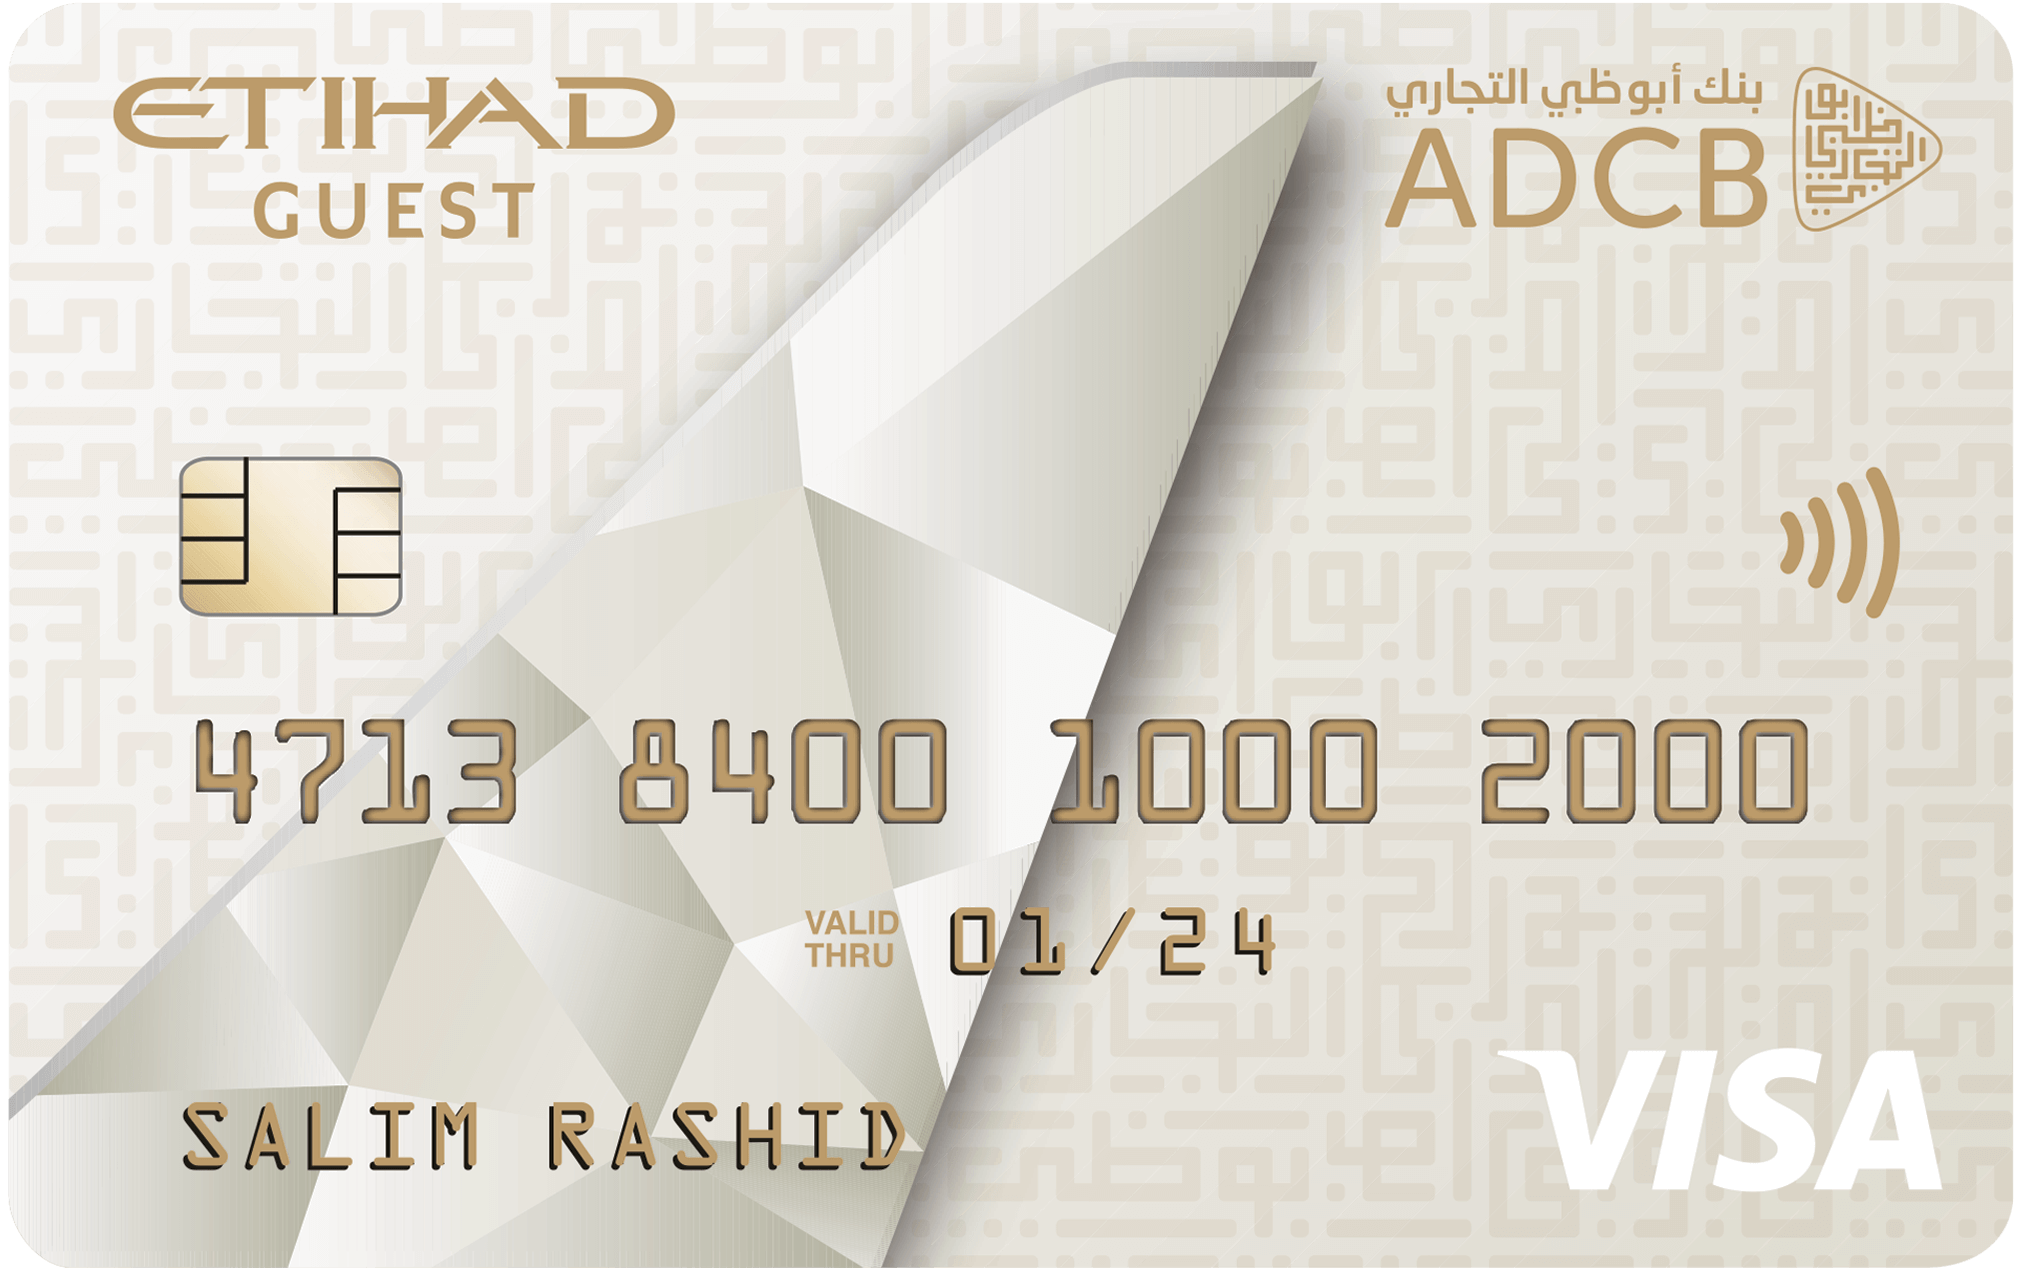 ADCB Etihad Guest Platinum Credit Card